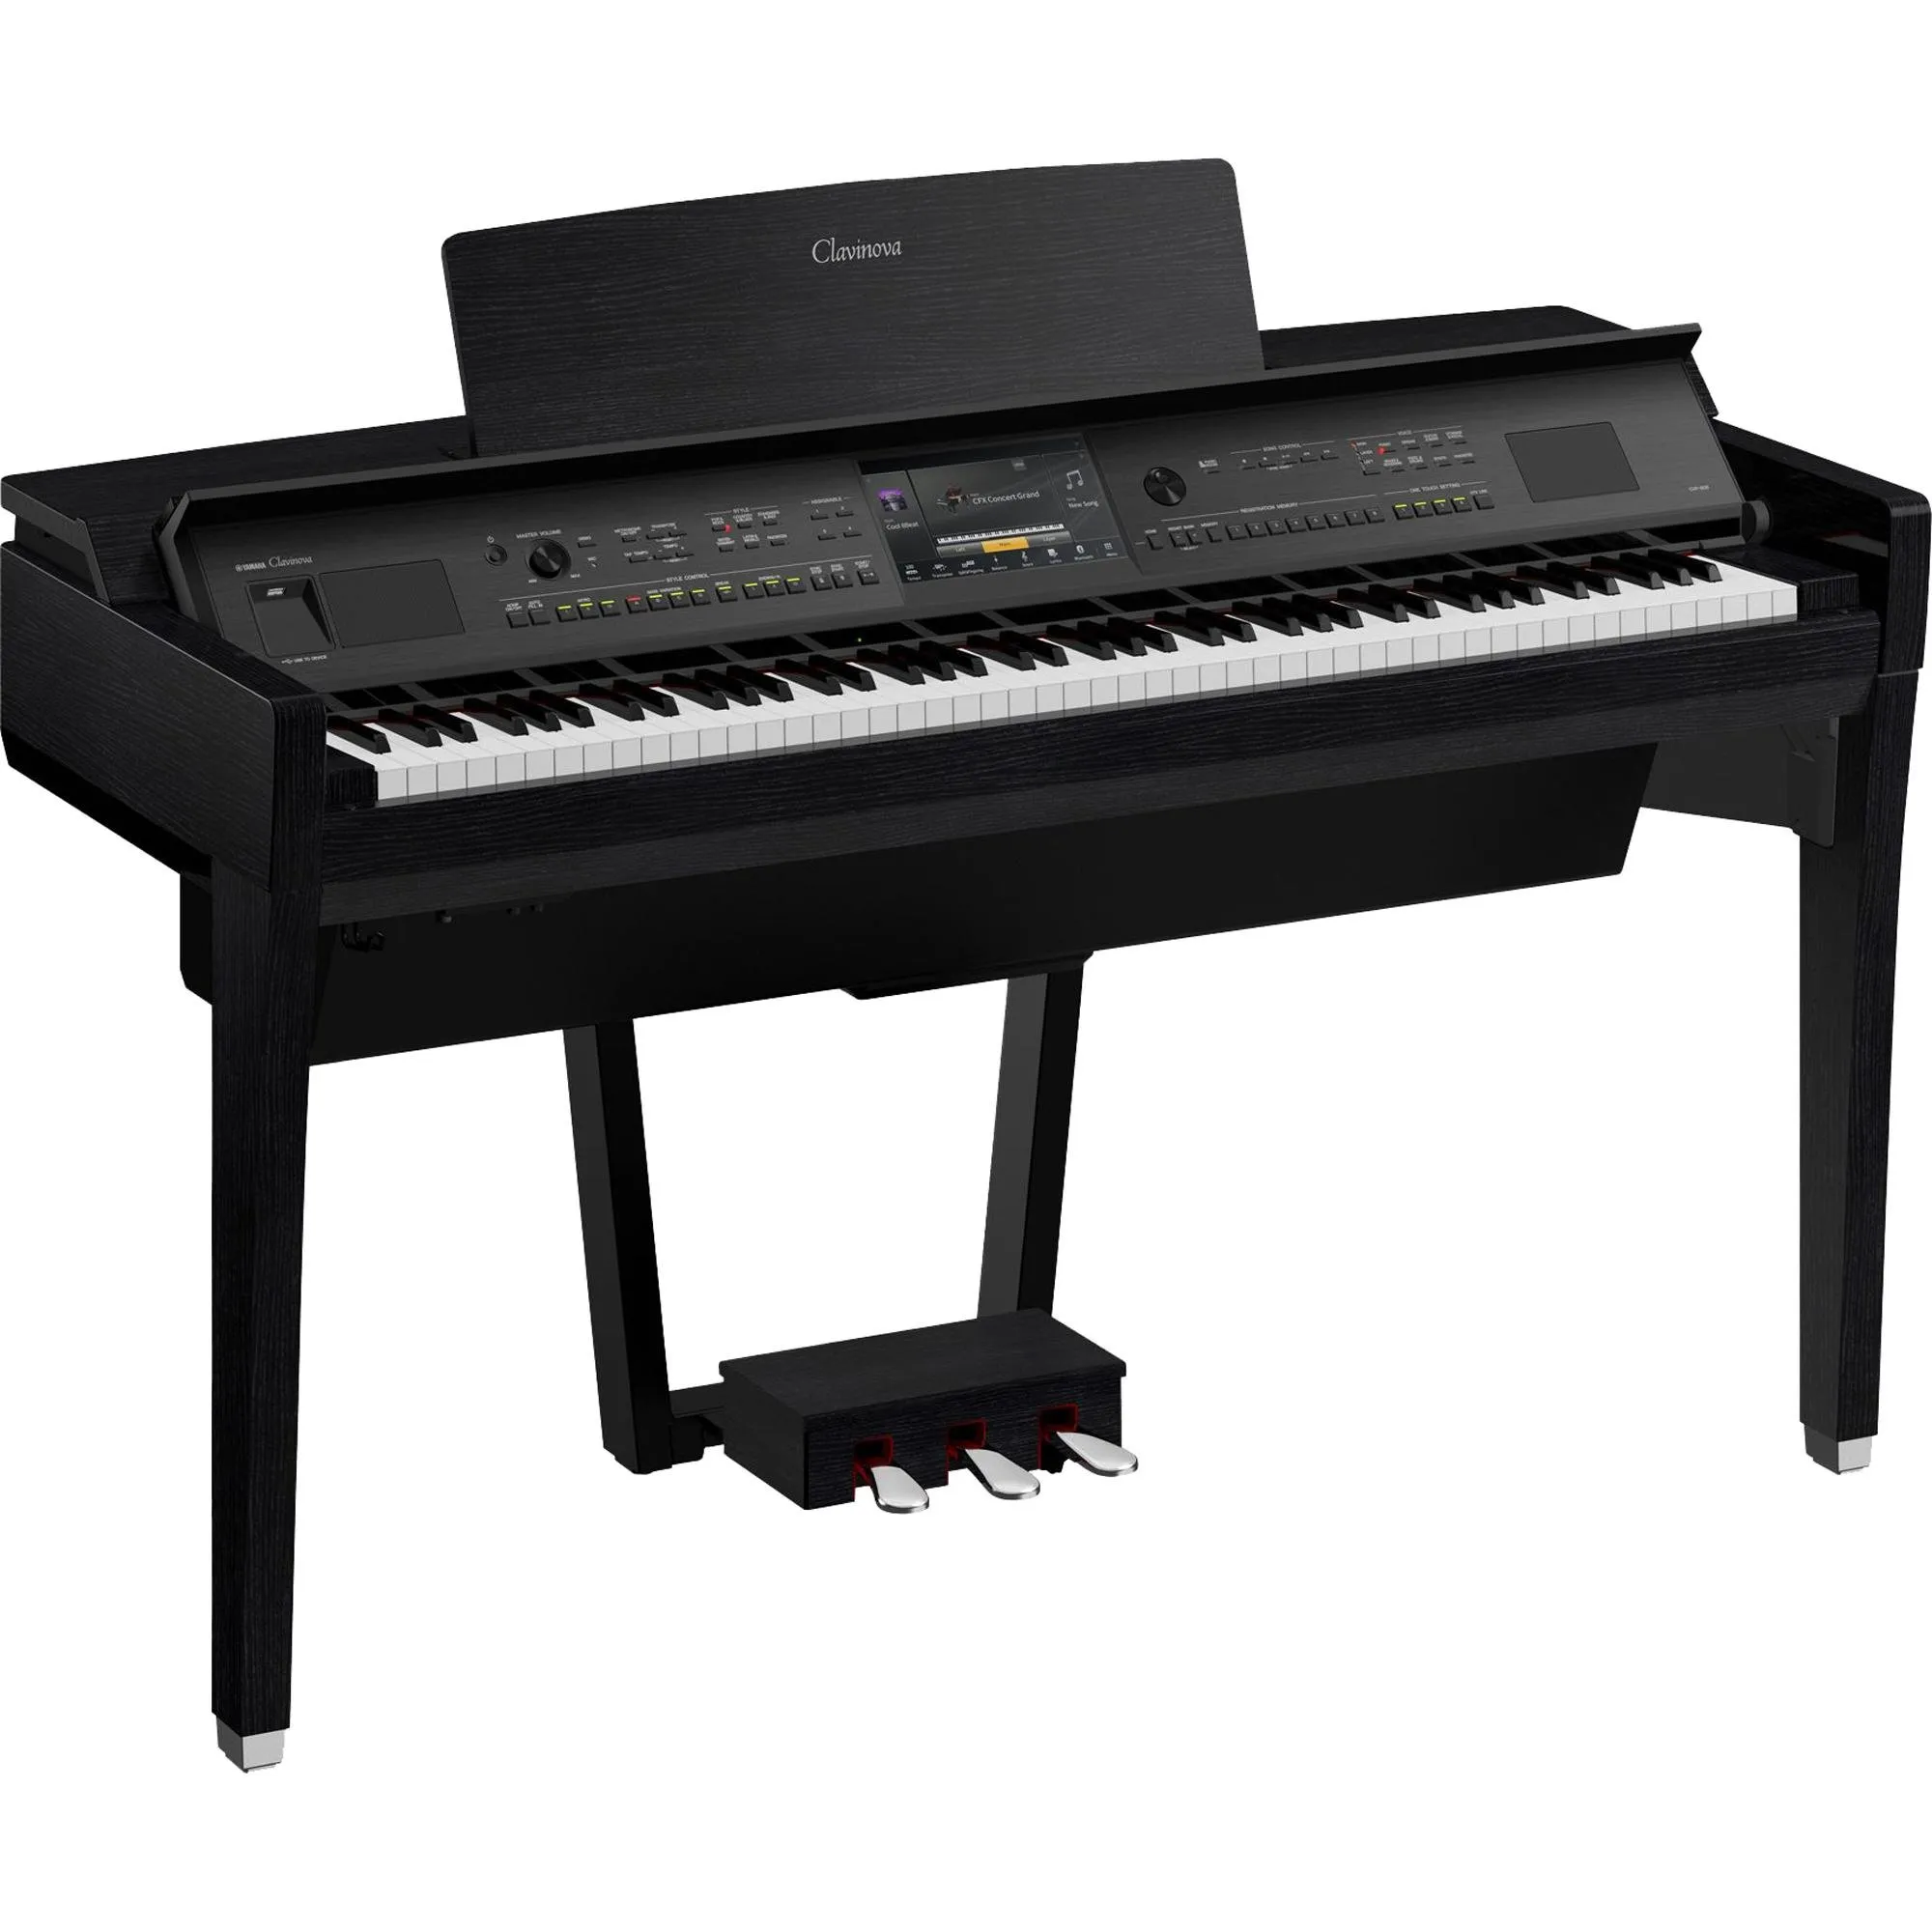 Piano Digital Yamaha CVP809 Preto Fosco por 54.628,99 à vista no boleto/pix ou parcele em até 12x sem juros. Compre na loja Mundomax!